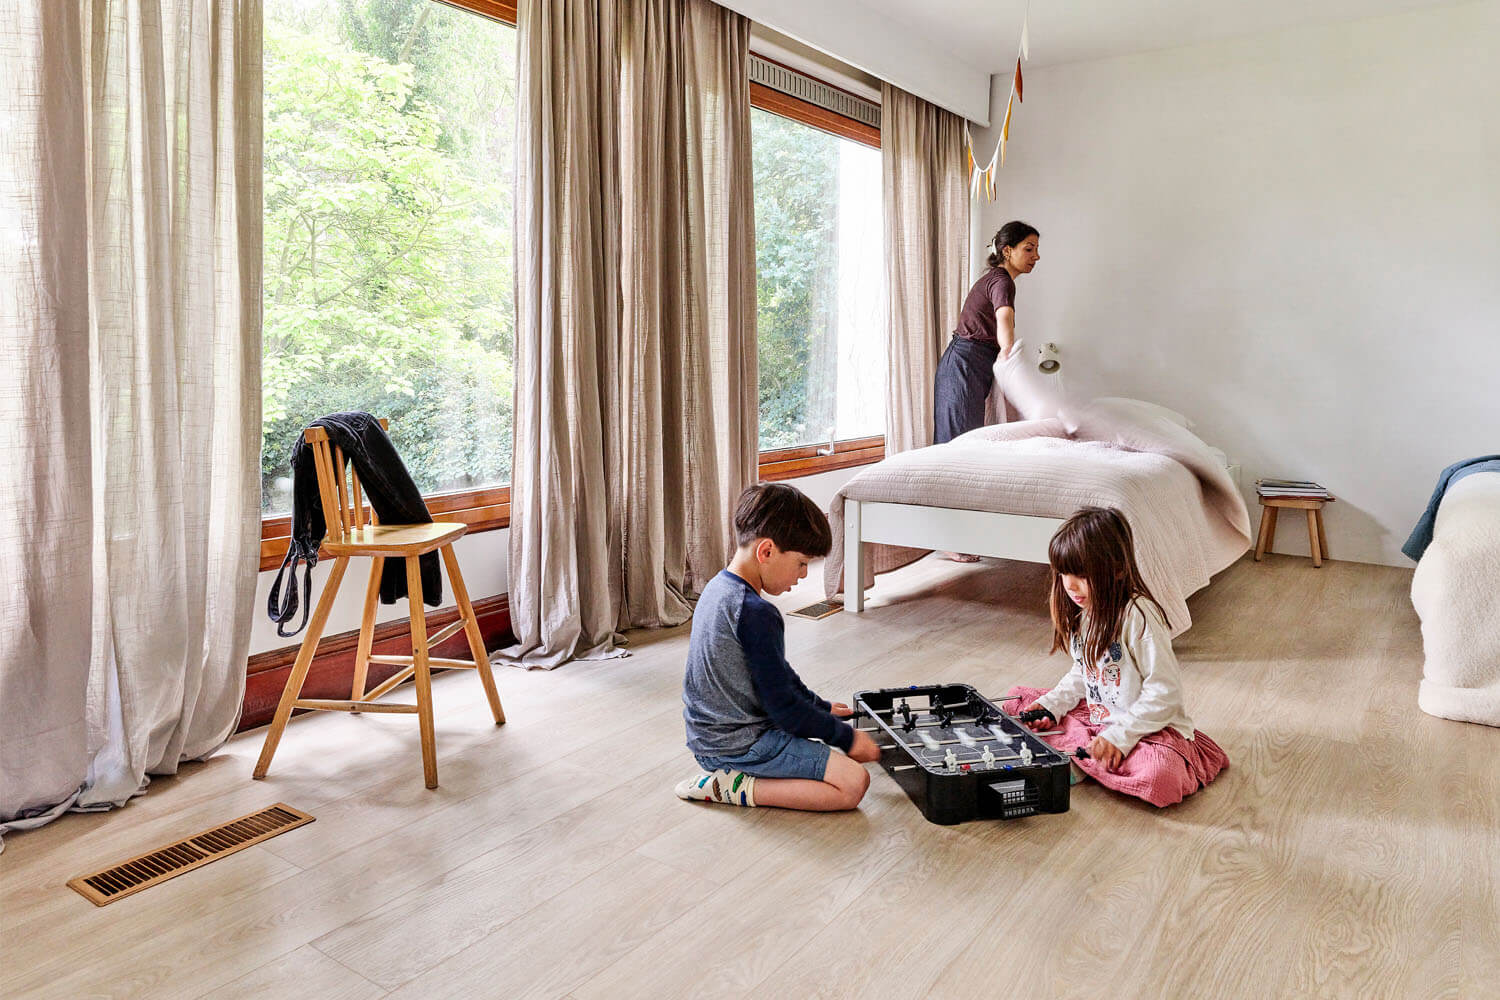 Sumeyya maakt het bed op in de slaapkamer van de kinderen, terwijl de kinderen een spelletje spelen op de vloer. Deze vloer is de Moduleo LayRed Laurel Oak 51230 Embossed luxe pvc vloer.